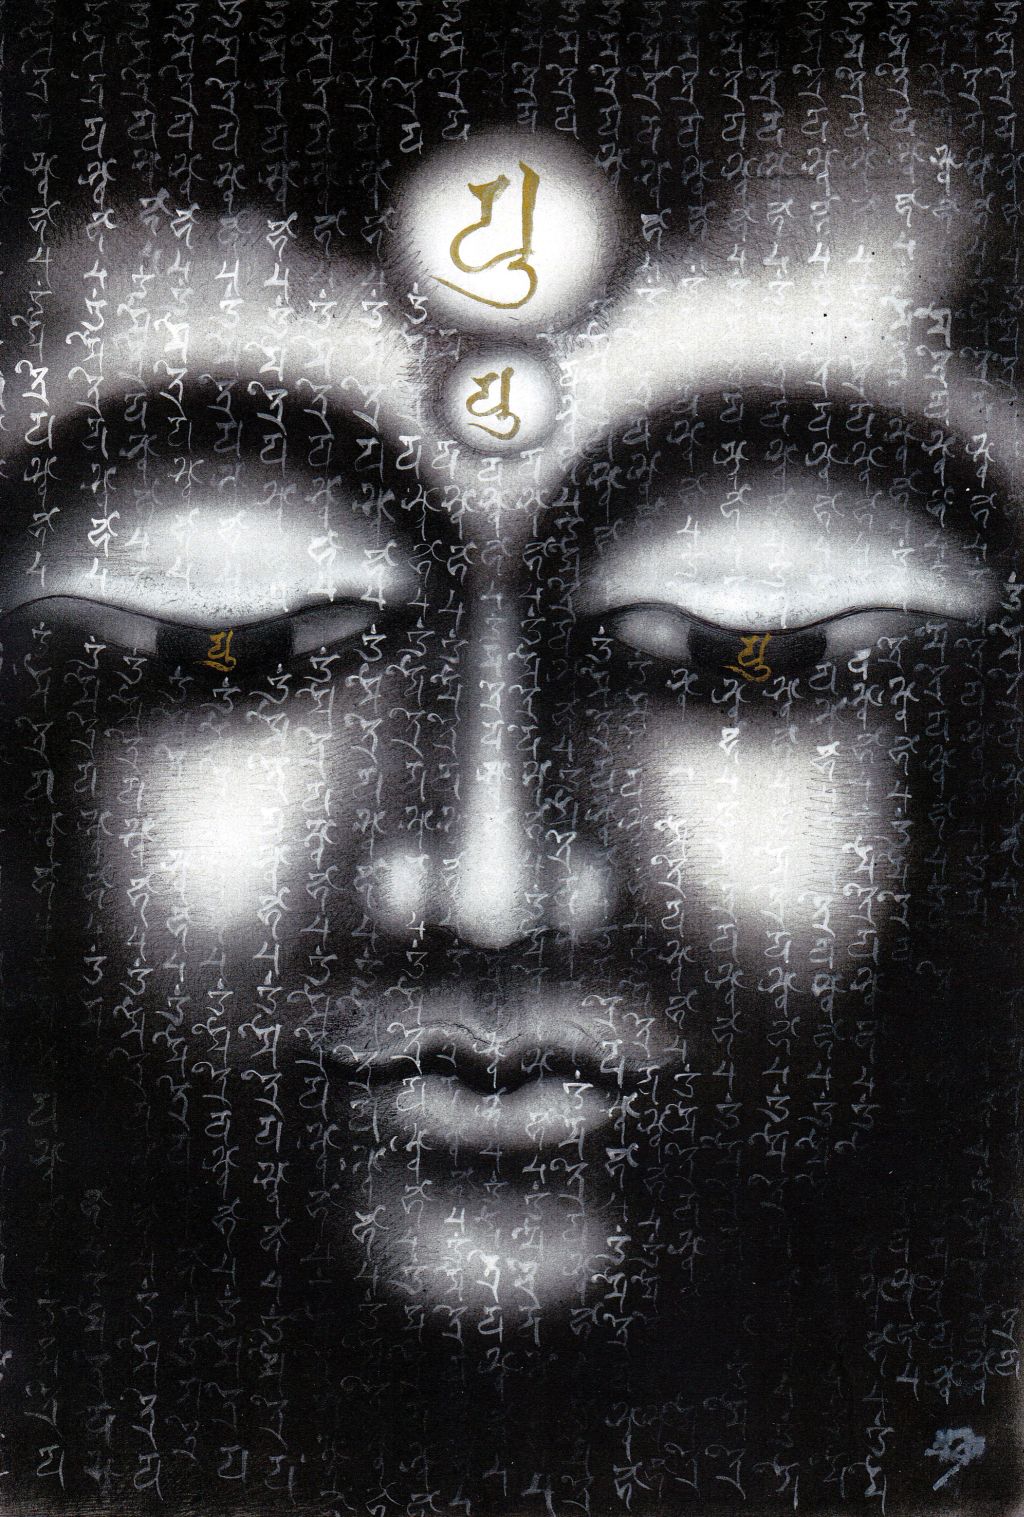 Ewa Hadydoń, „Miroku Bodhisattwa”, sanskrypt Maitreya Bodhisattva, 38,7 x 26,6 cm, airbrush, długopis, biały i złoty tusz (źródło: materiały prasowe organizatora)